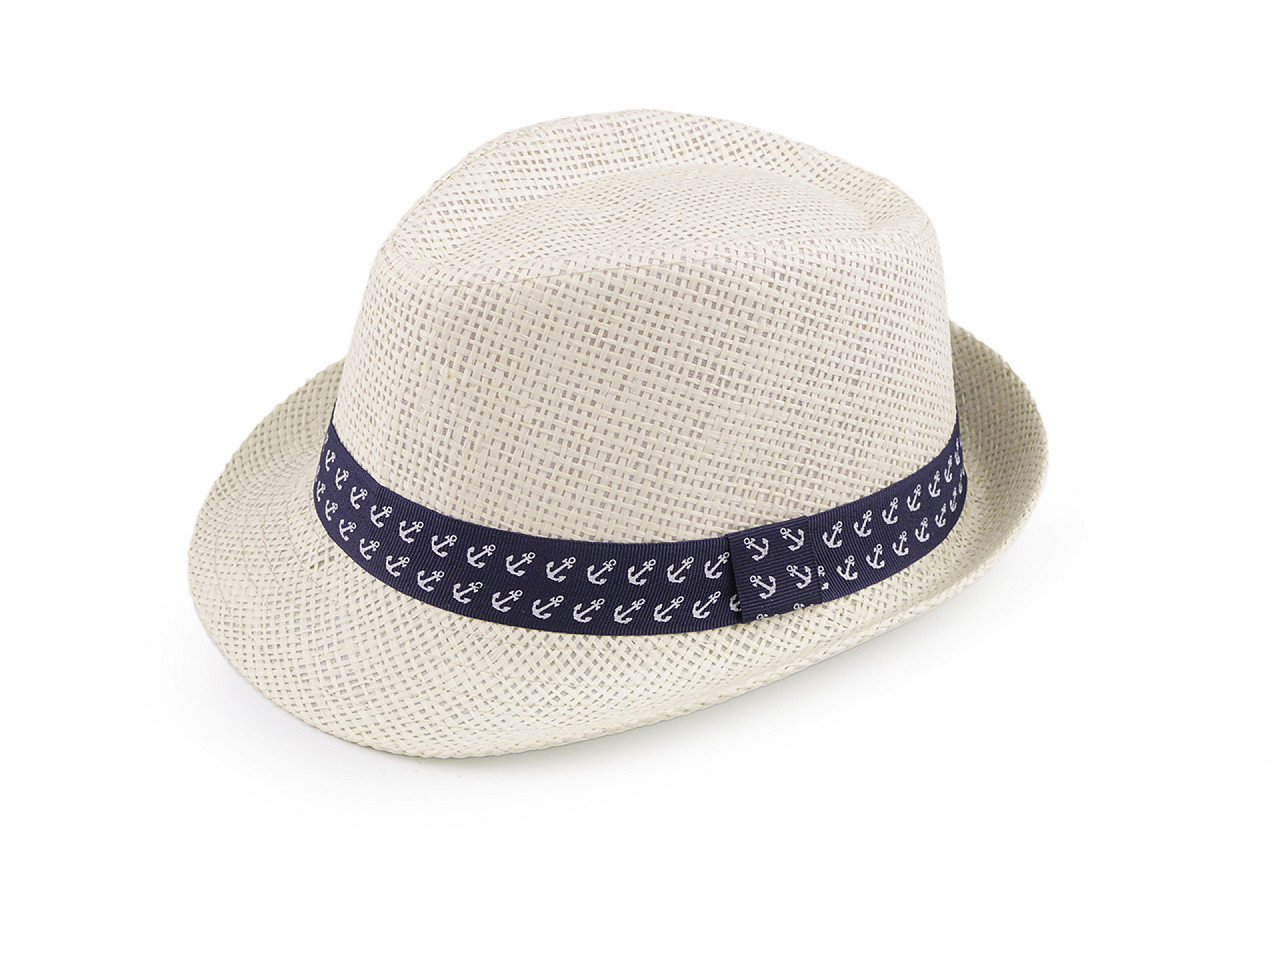 Dětský letní klobouk / slamák, barva 11 (52 cm) režná světlá